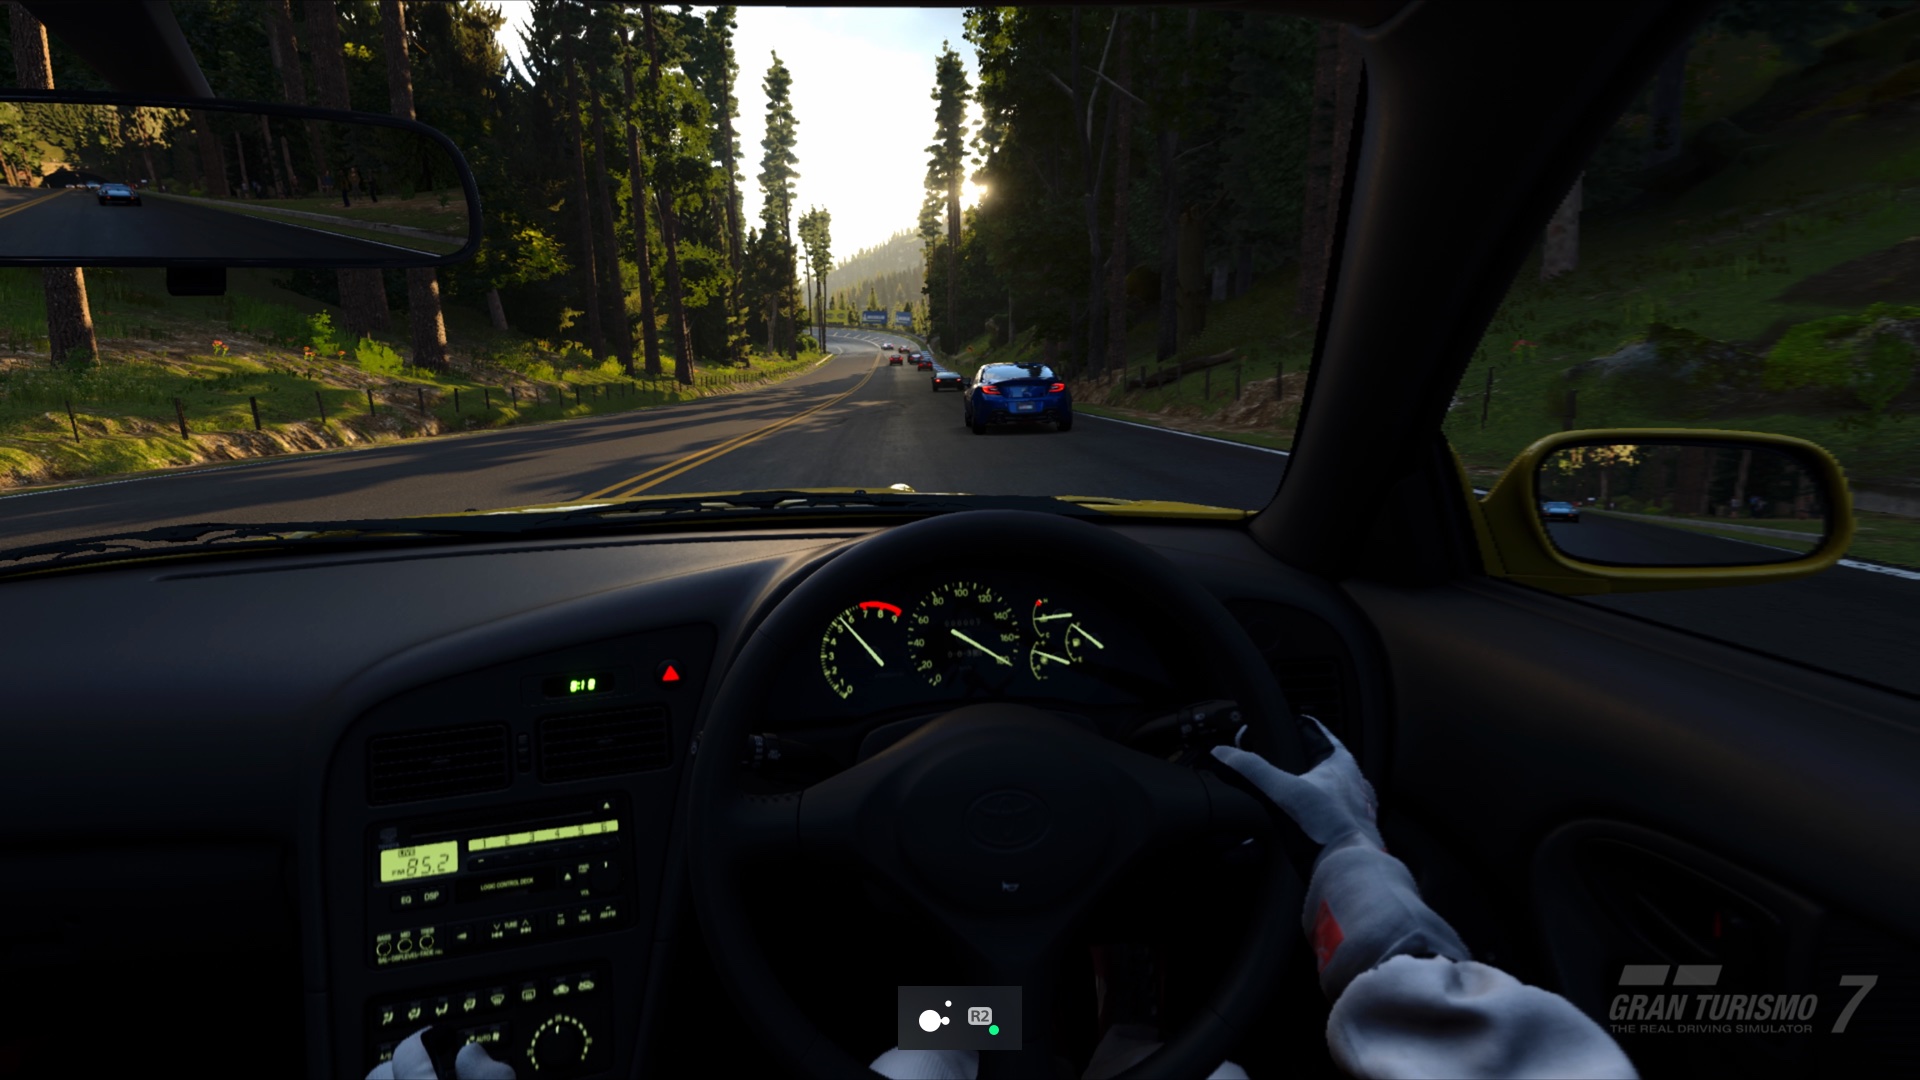  "Capture d'écran PS5 de Gran Turismo 7 montrant le mode bascule activé pour le bouton 